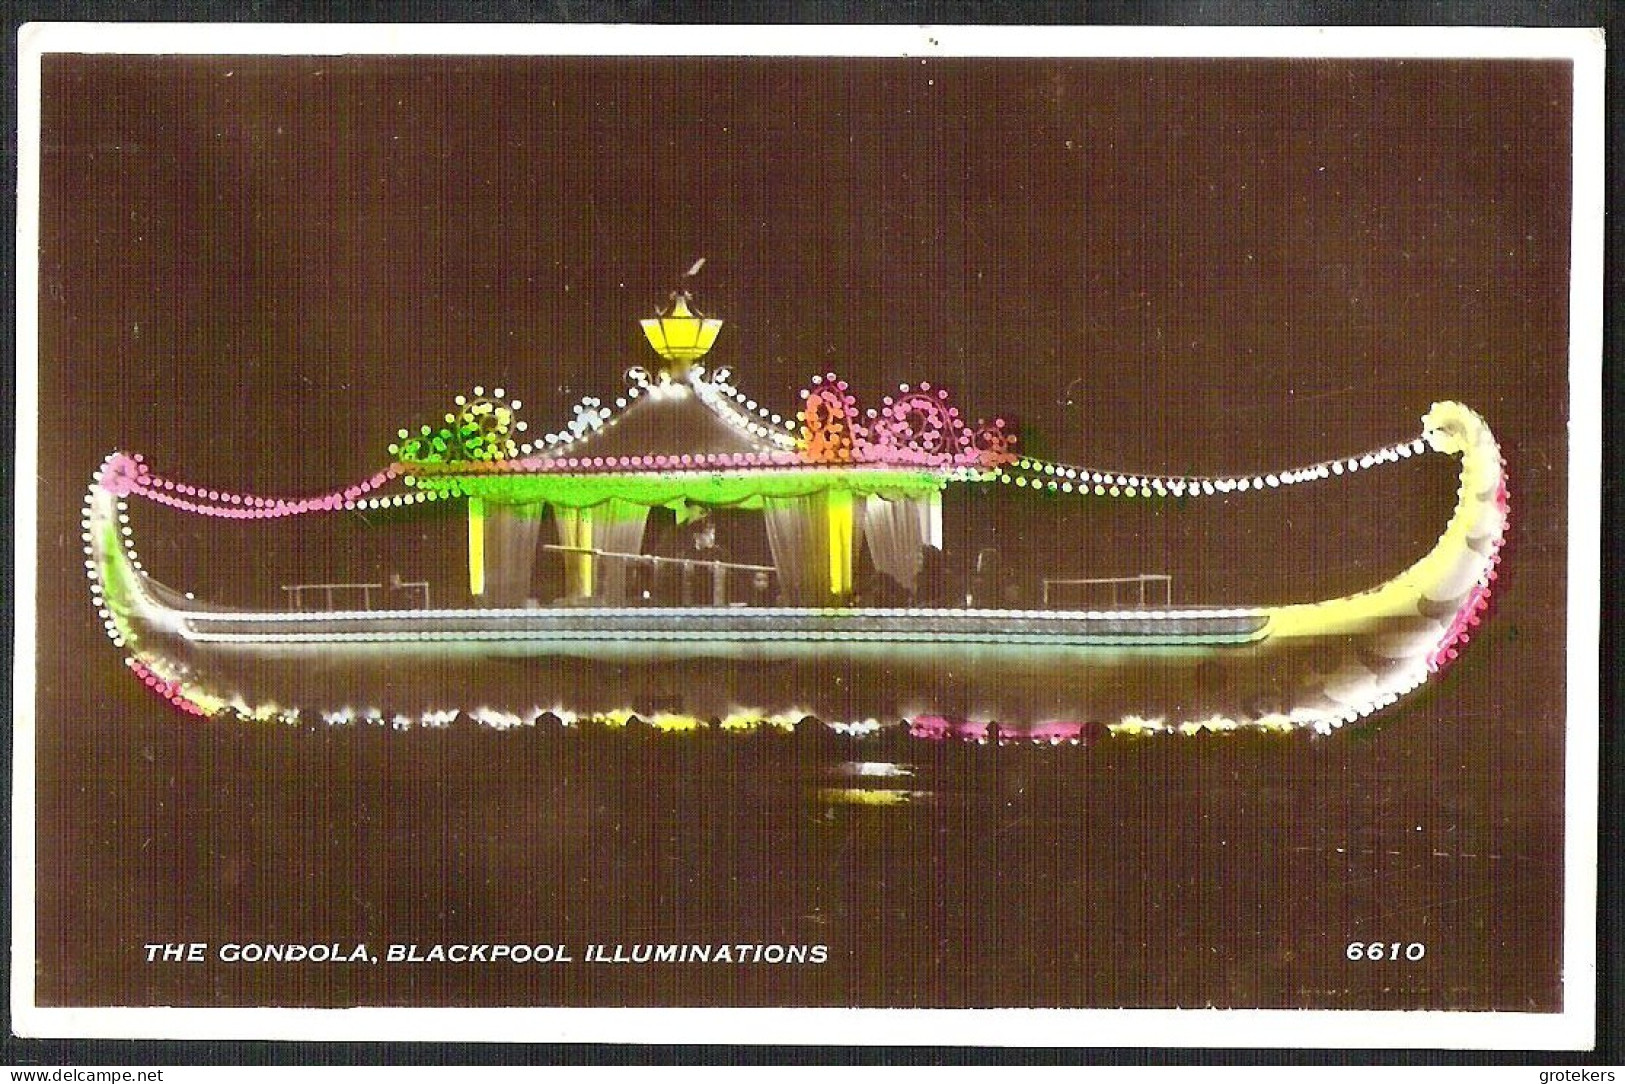 BLACKPOOL Illuminations The Gondola - Blackpool